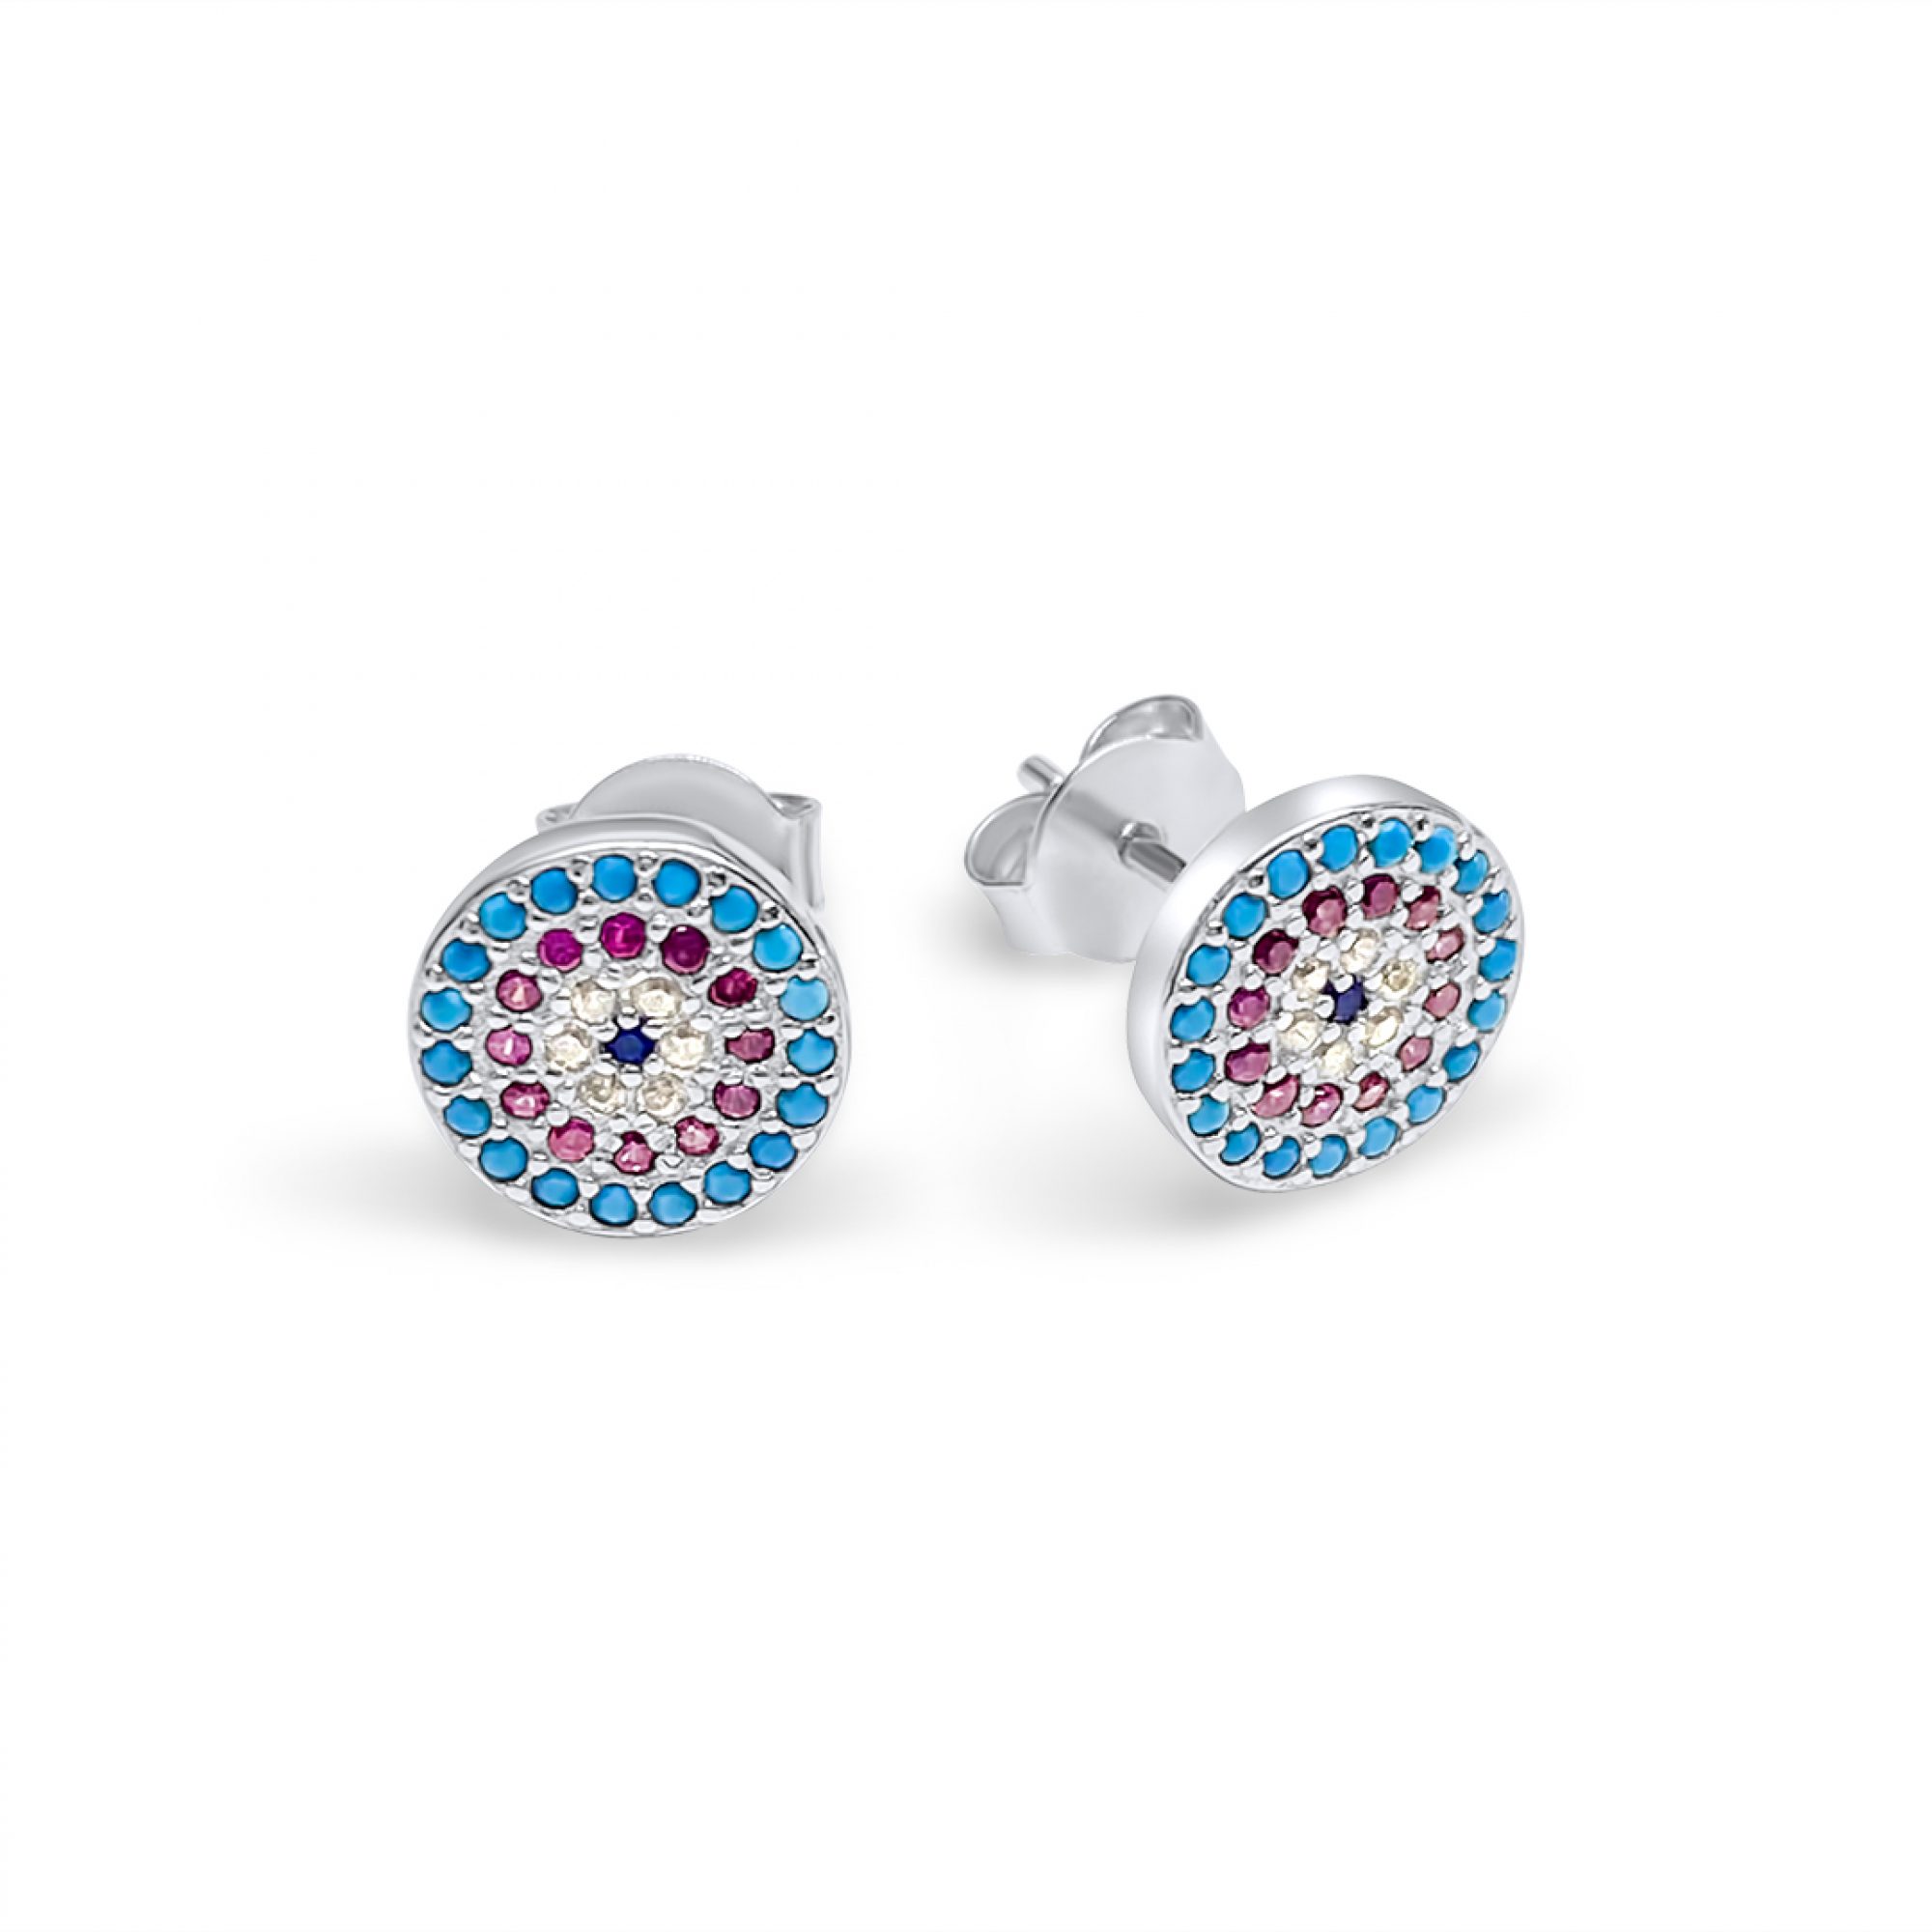 Eye stud earrings with zircon stones